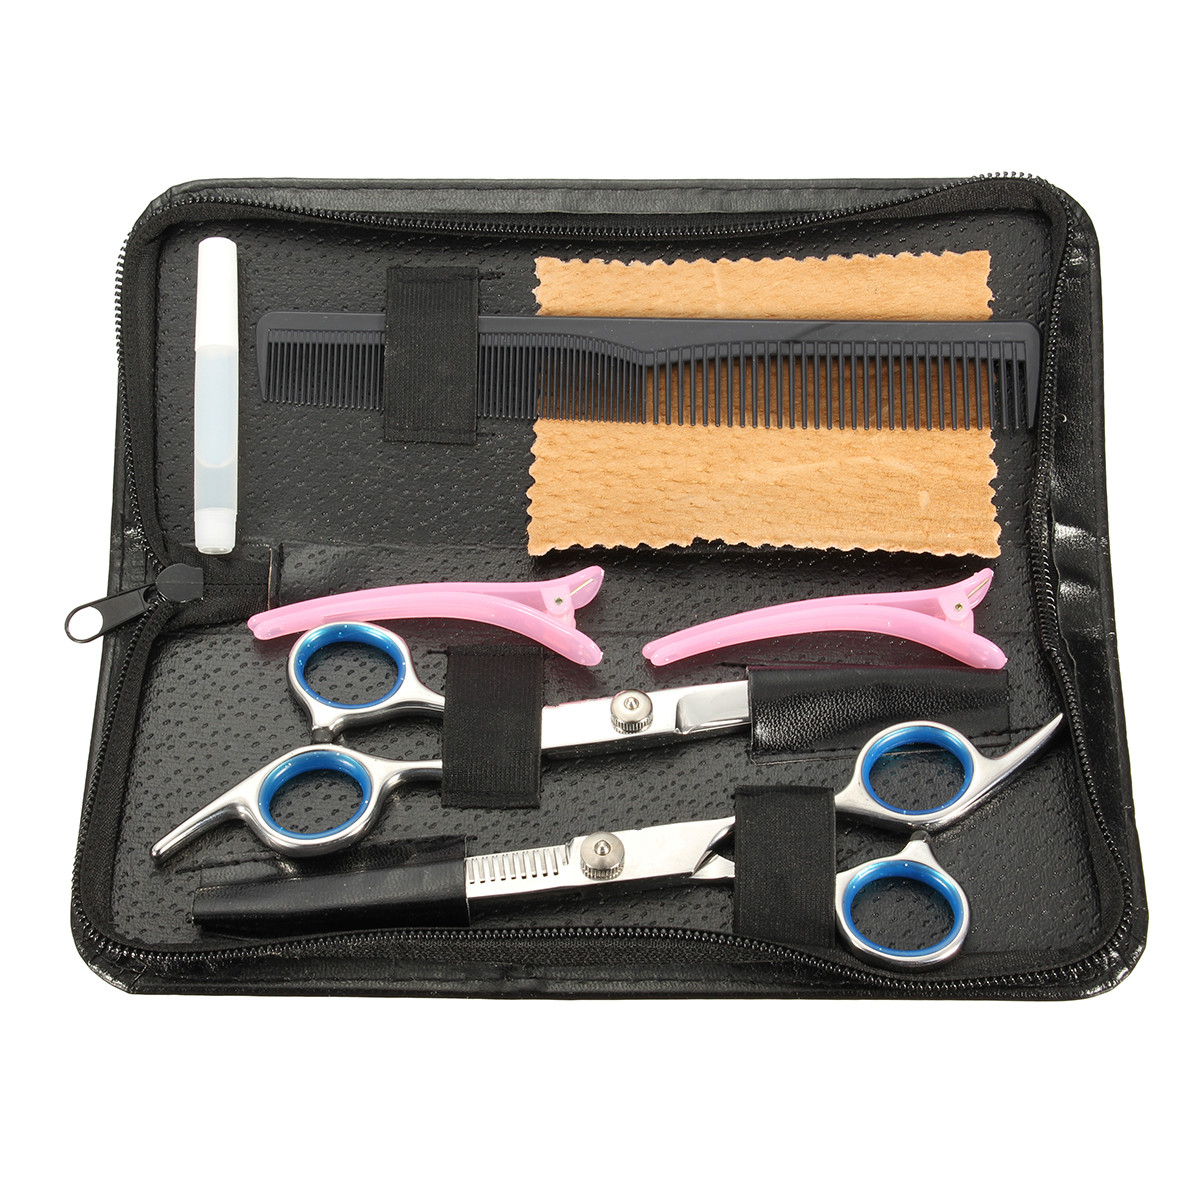 

6 '' Волосы Ножницы Set Pro Salon Barber ВолосыРазница для резки точильных ножниц Зажимы для укладки Набор Styling Набор